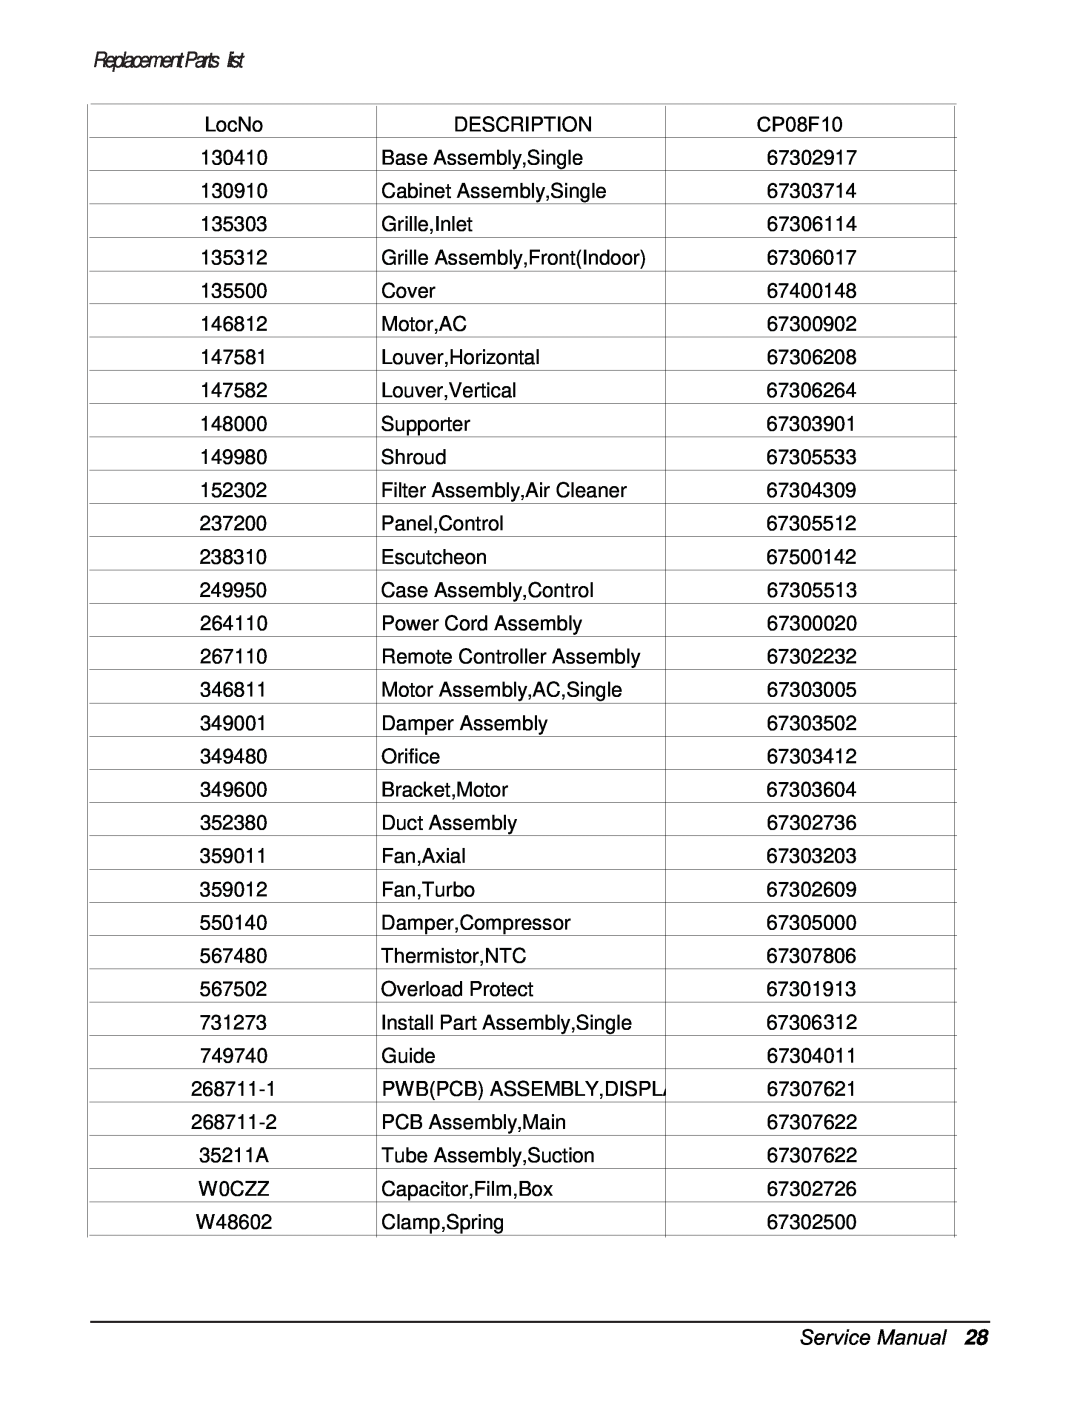 Friedrich CP06F10, CP08F10 manual ReplacementParts list, LocNo 